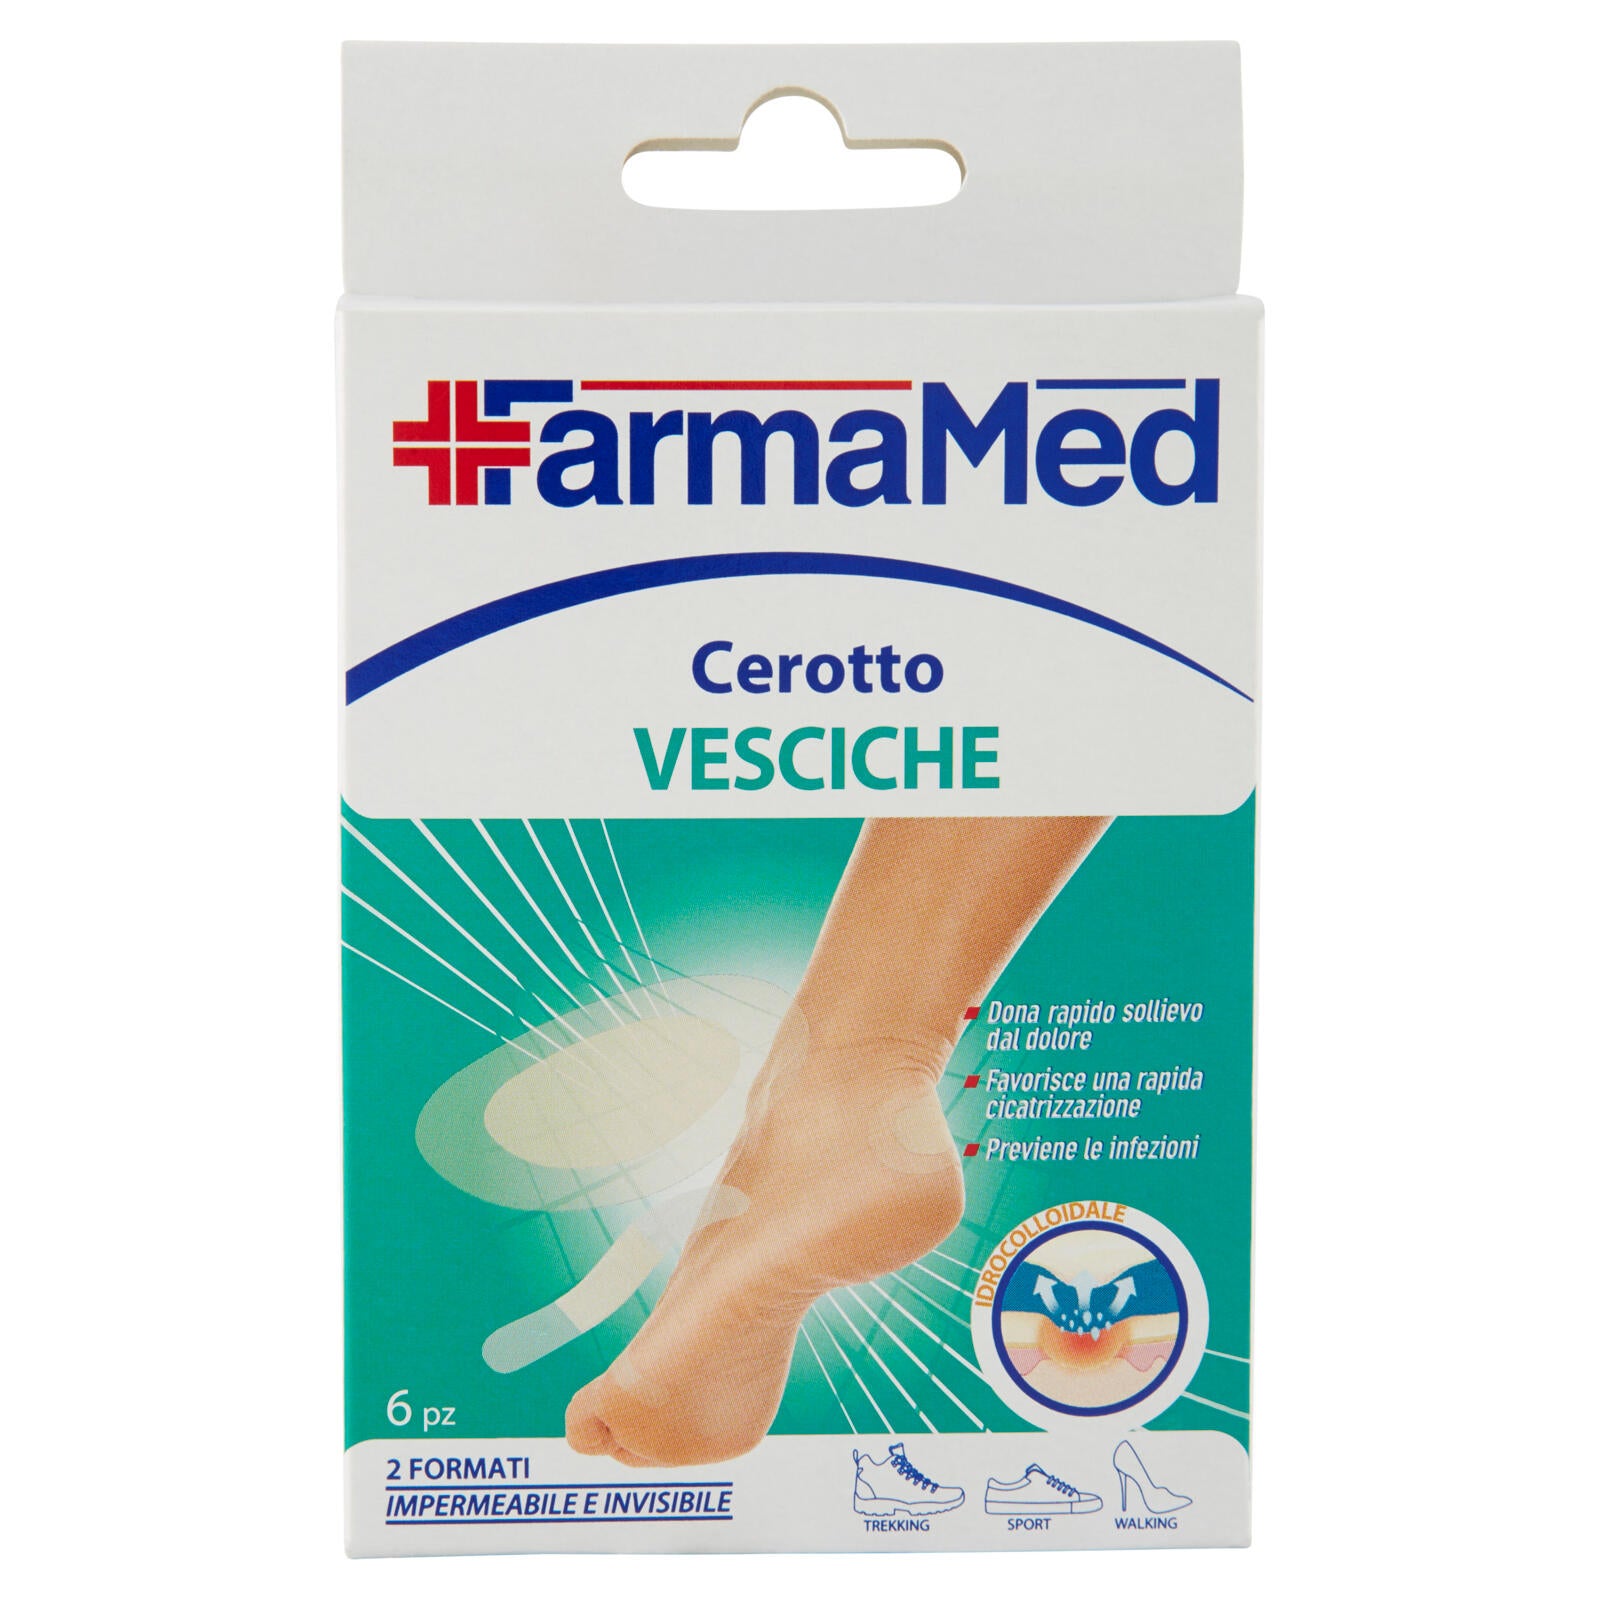 FarmaMed Cerotto Vesciche 2 Formati 6 pz